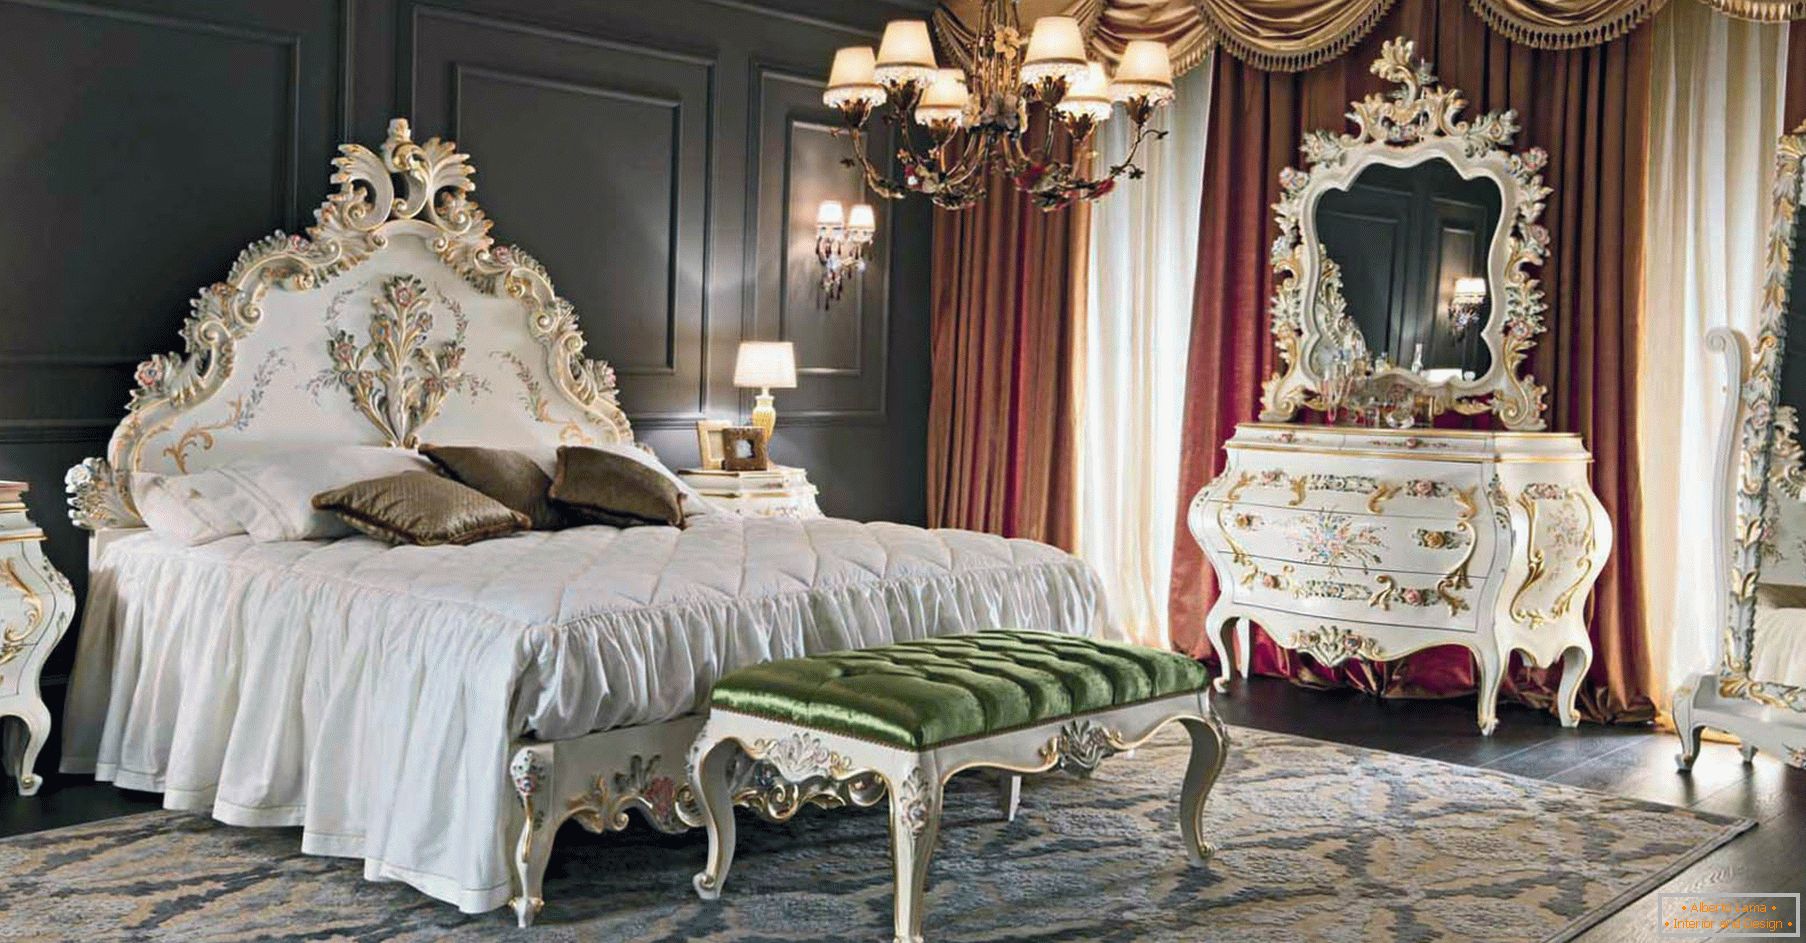 Pour décorer la chambre, un contraste de couleurs marron foncé, or, rouge et blanc a été utilisé. Le mobilier est choisi selon le style du baroque.